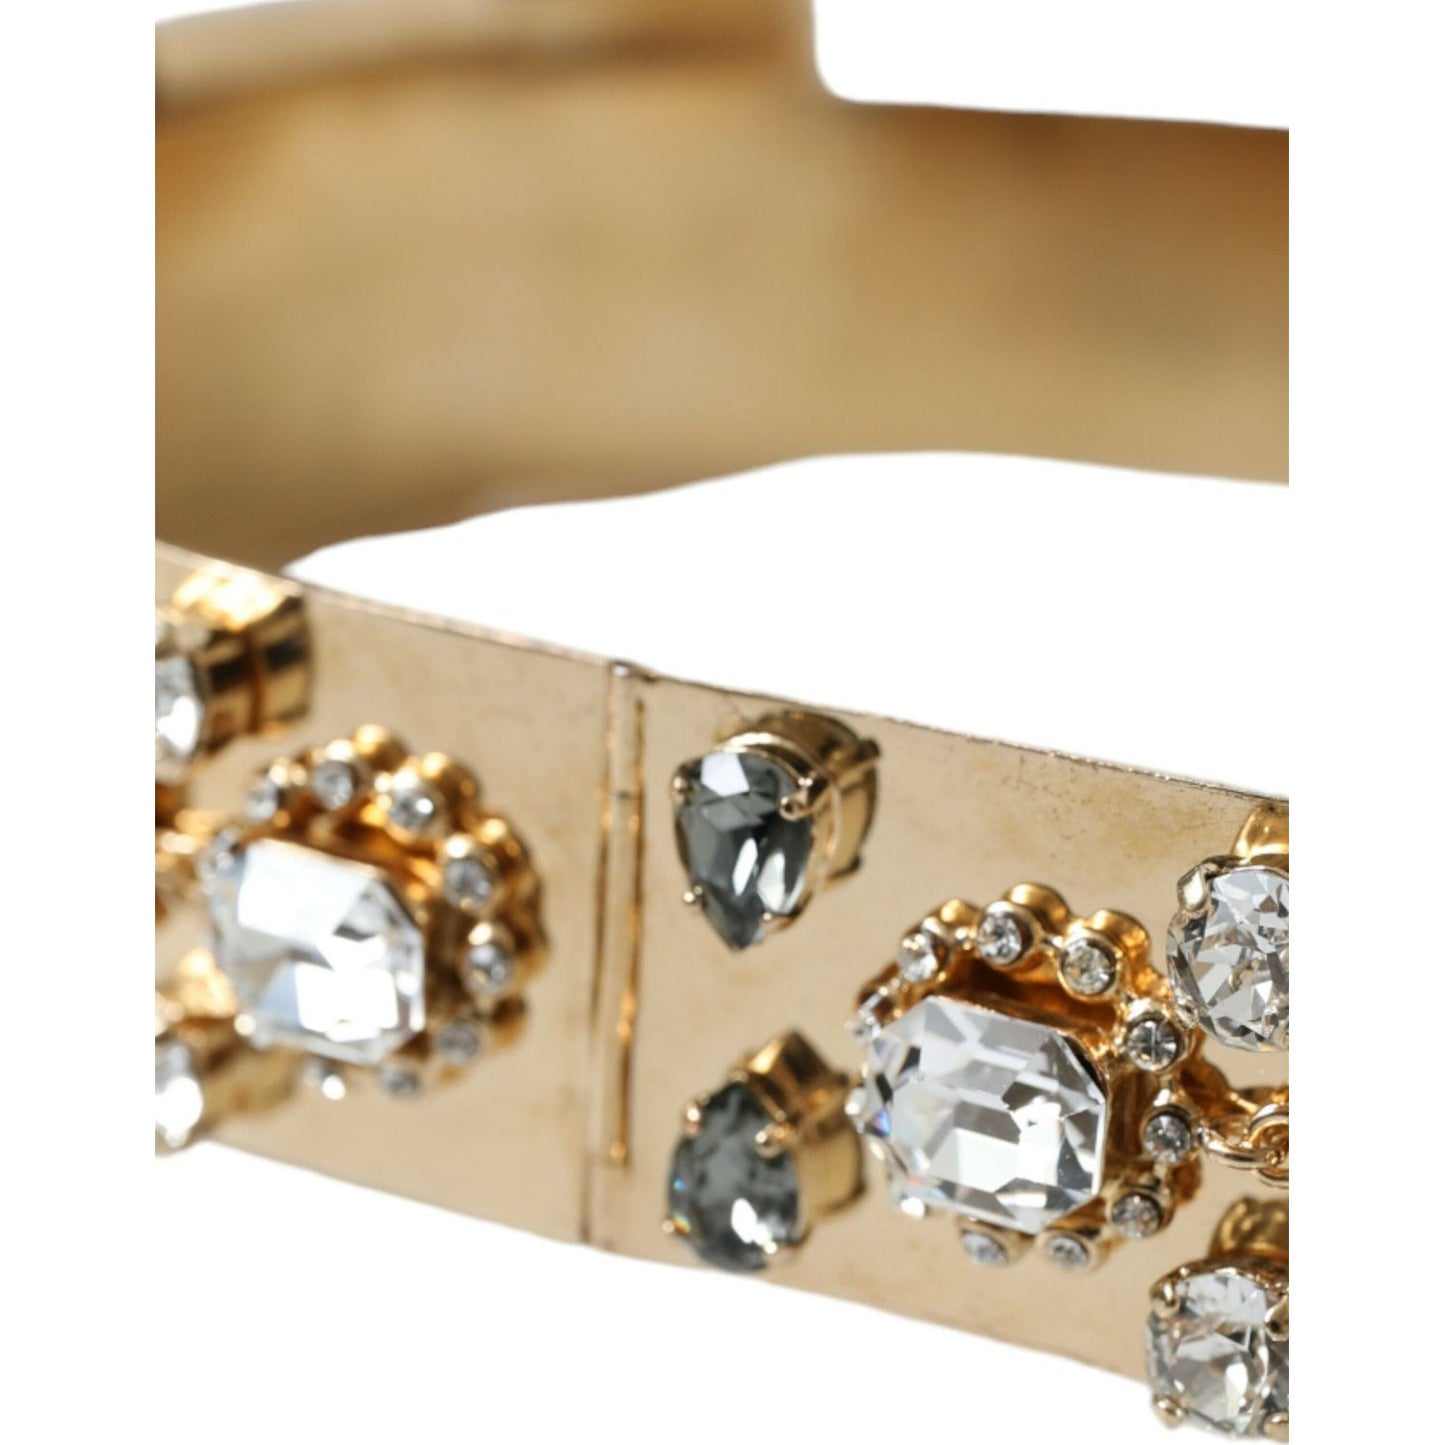 Dolce & Gabbana | Gold-Tone Crystal Embellished Waist Belt| McRichard Designer Brands   